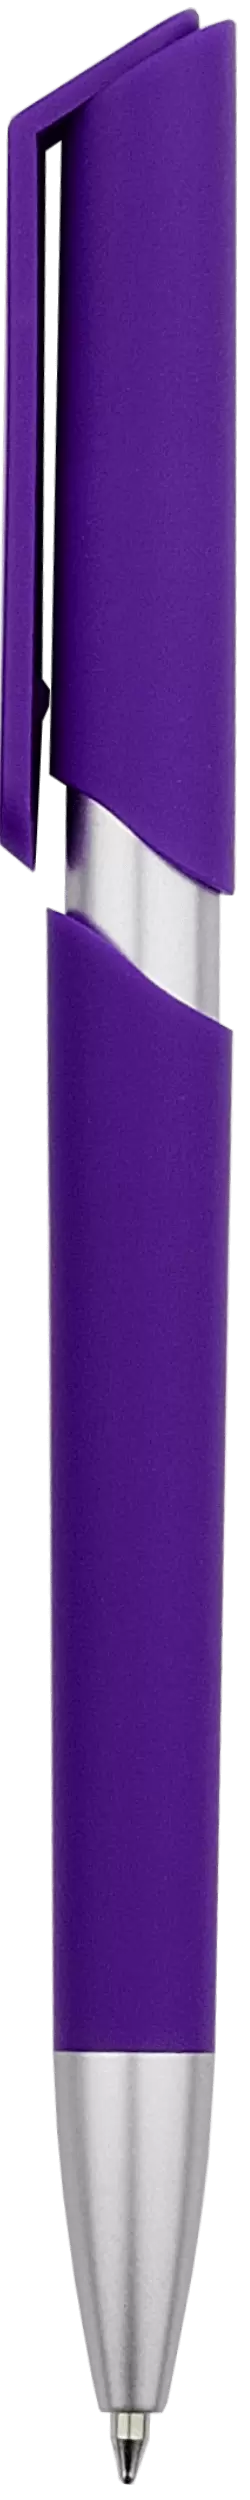 Ручка ZOOM SOFT Фиолетовая 2020.11